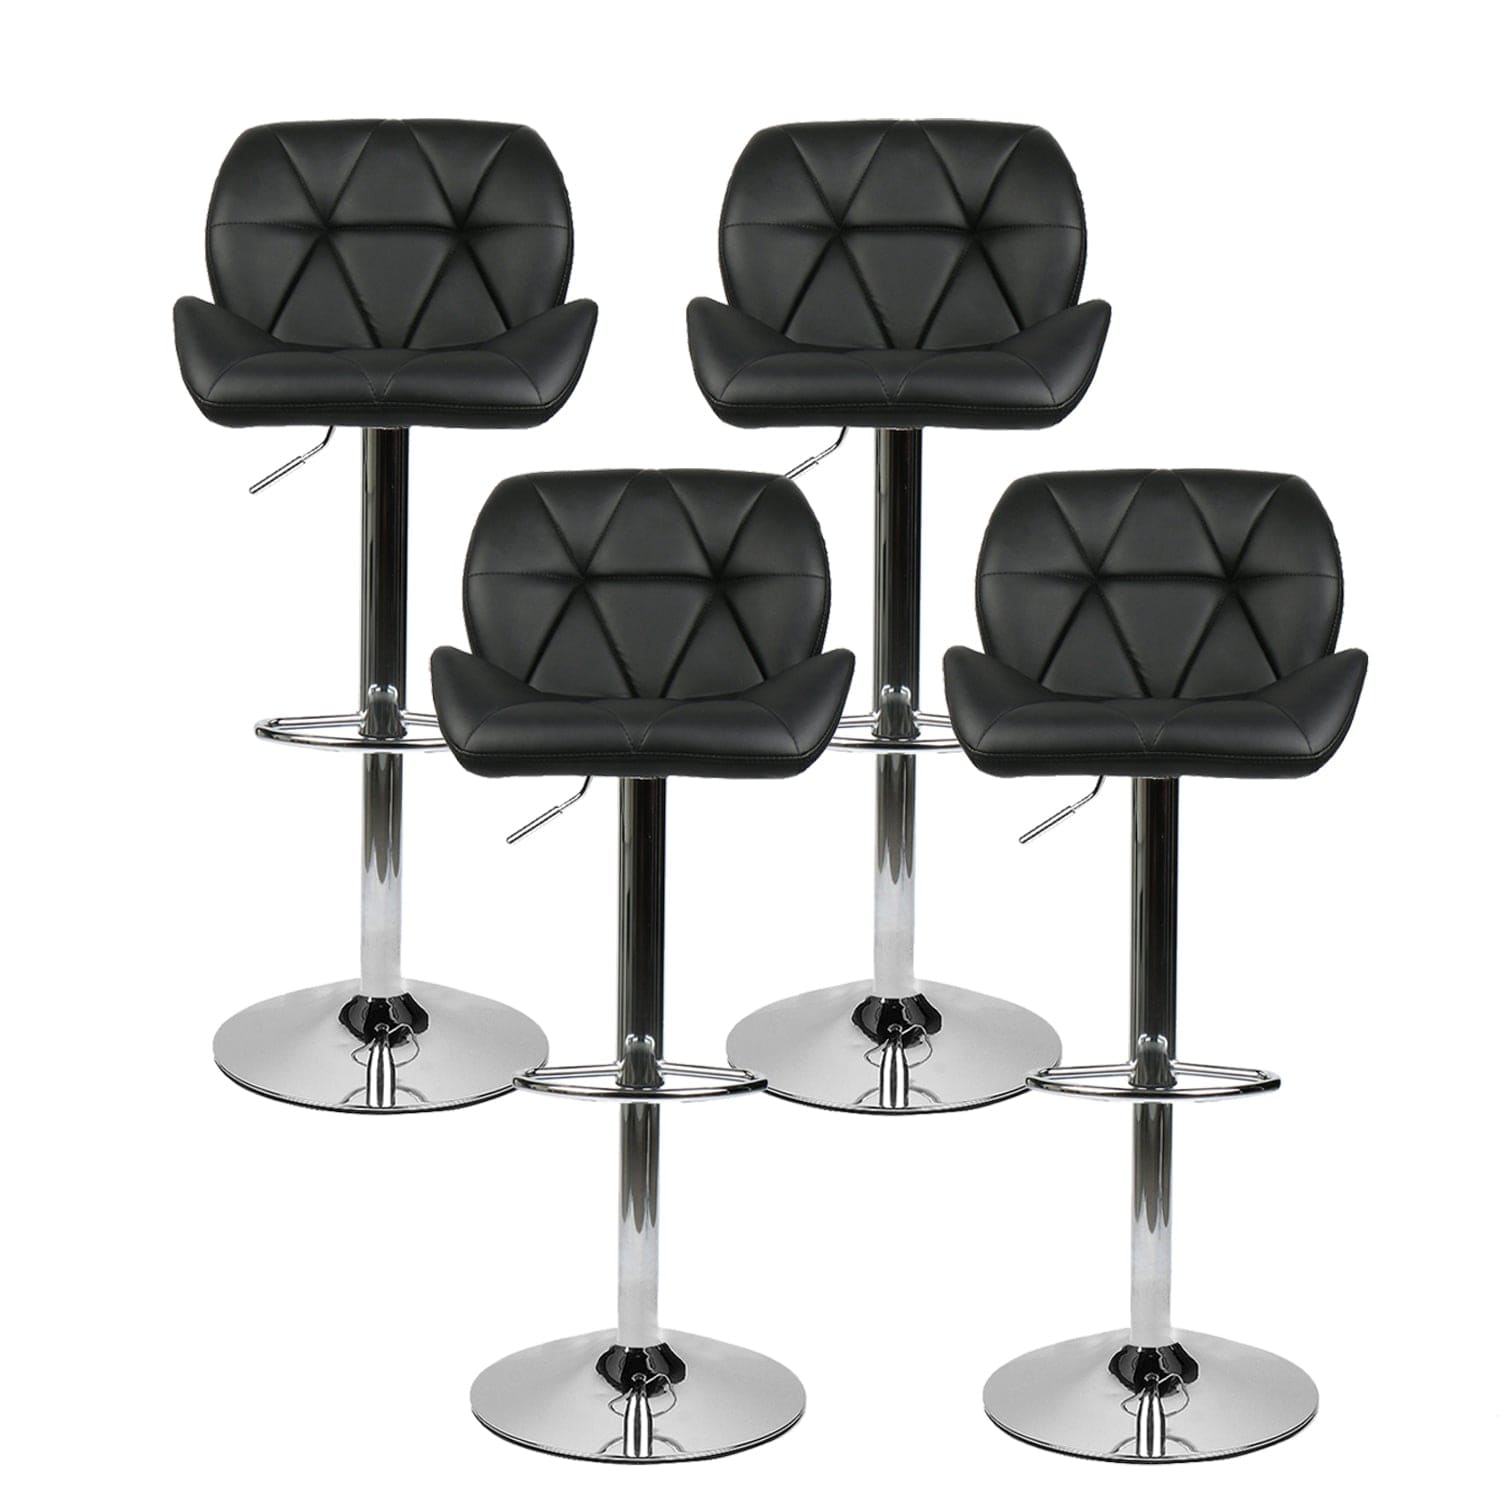 Elecwish Grid Black Barstools Set of 4 Bar Stools OW001